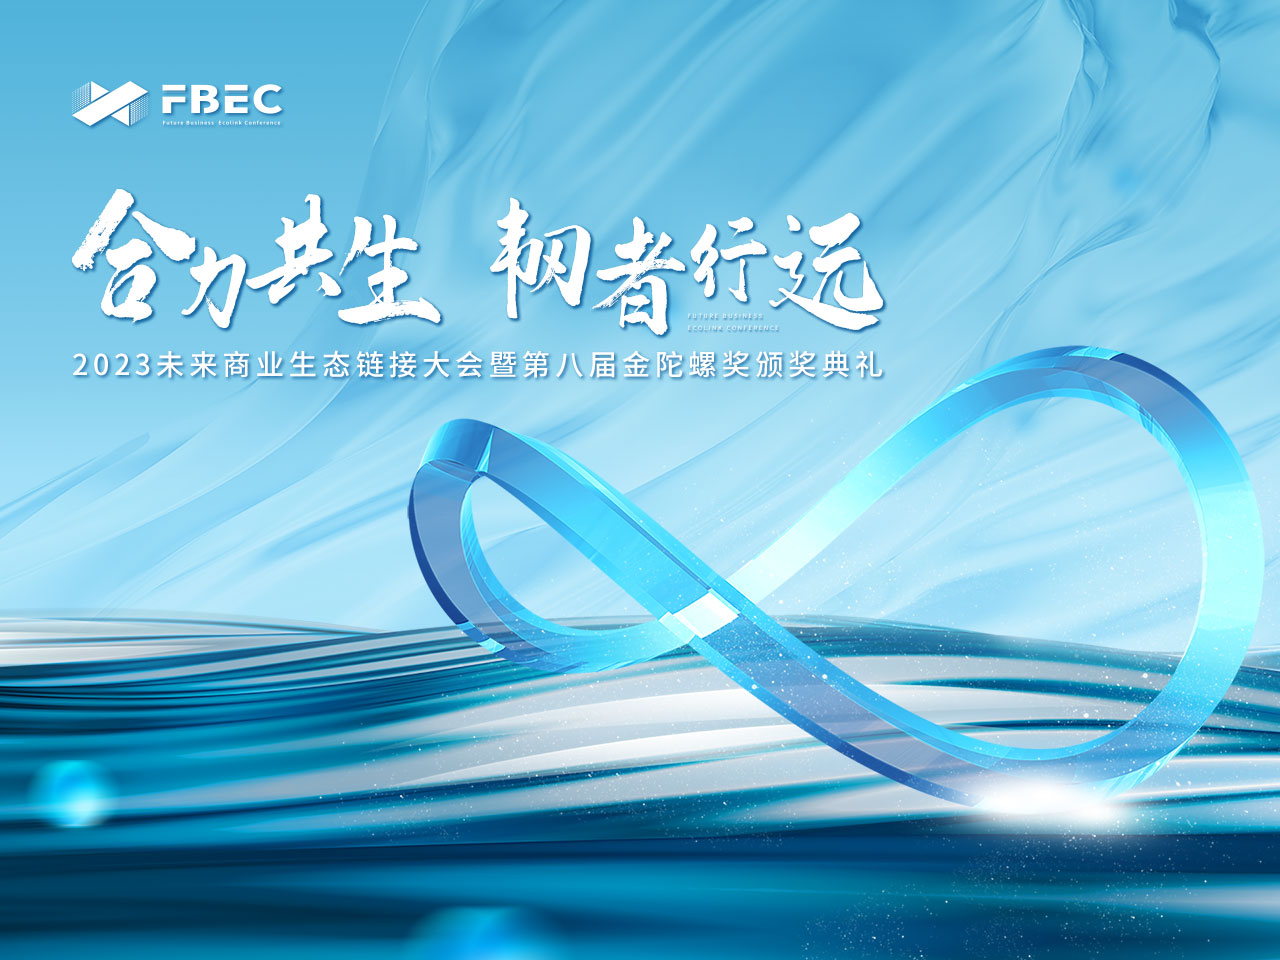 FBEC2023 | 爱奇艺 高级副总裁 张航确认出席并发表主题演讲